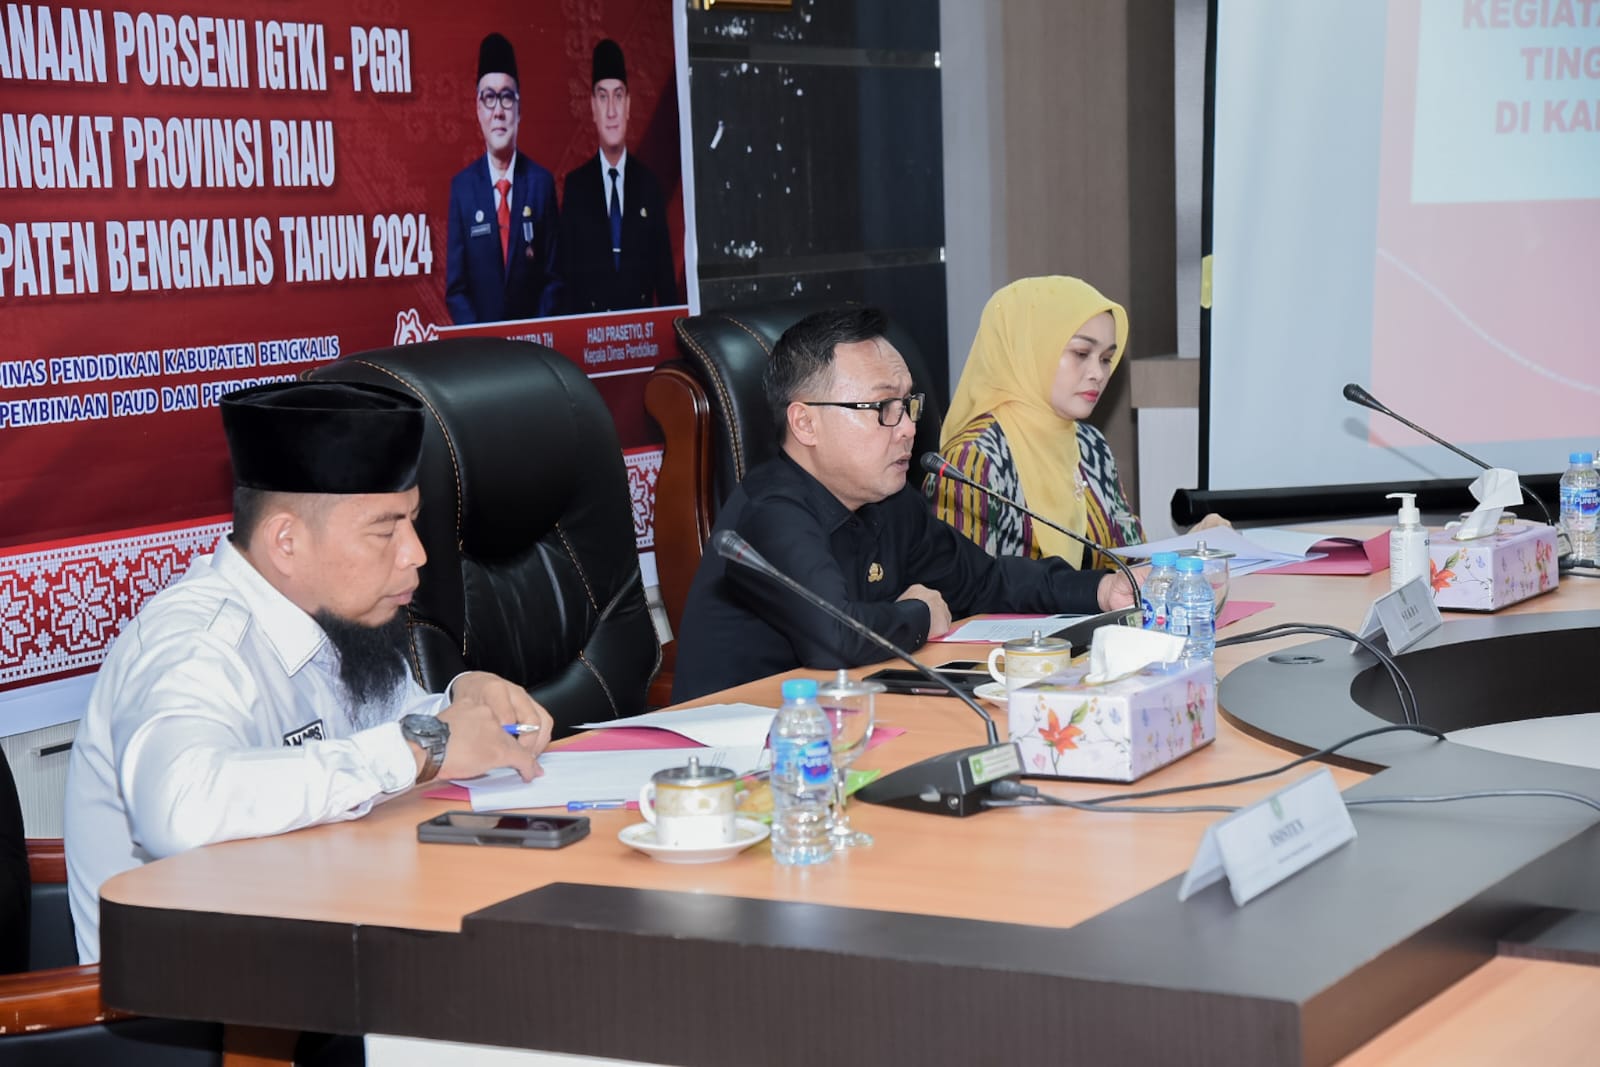 Persiapan Tuan Rumah Poseni IGTKI Provinsi Riau